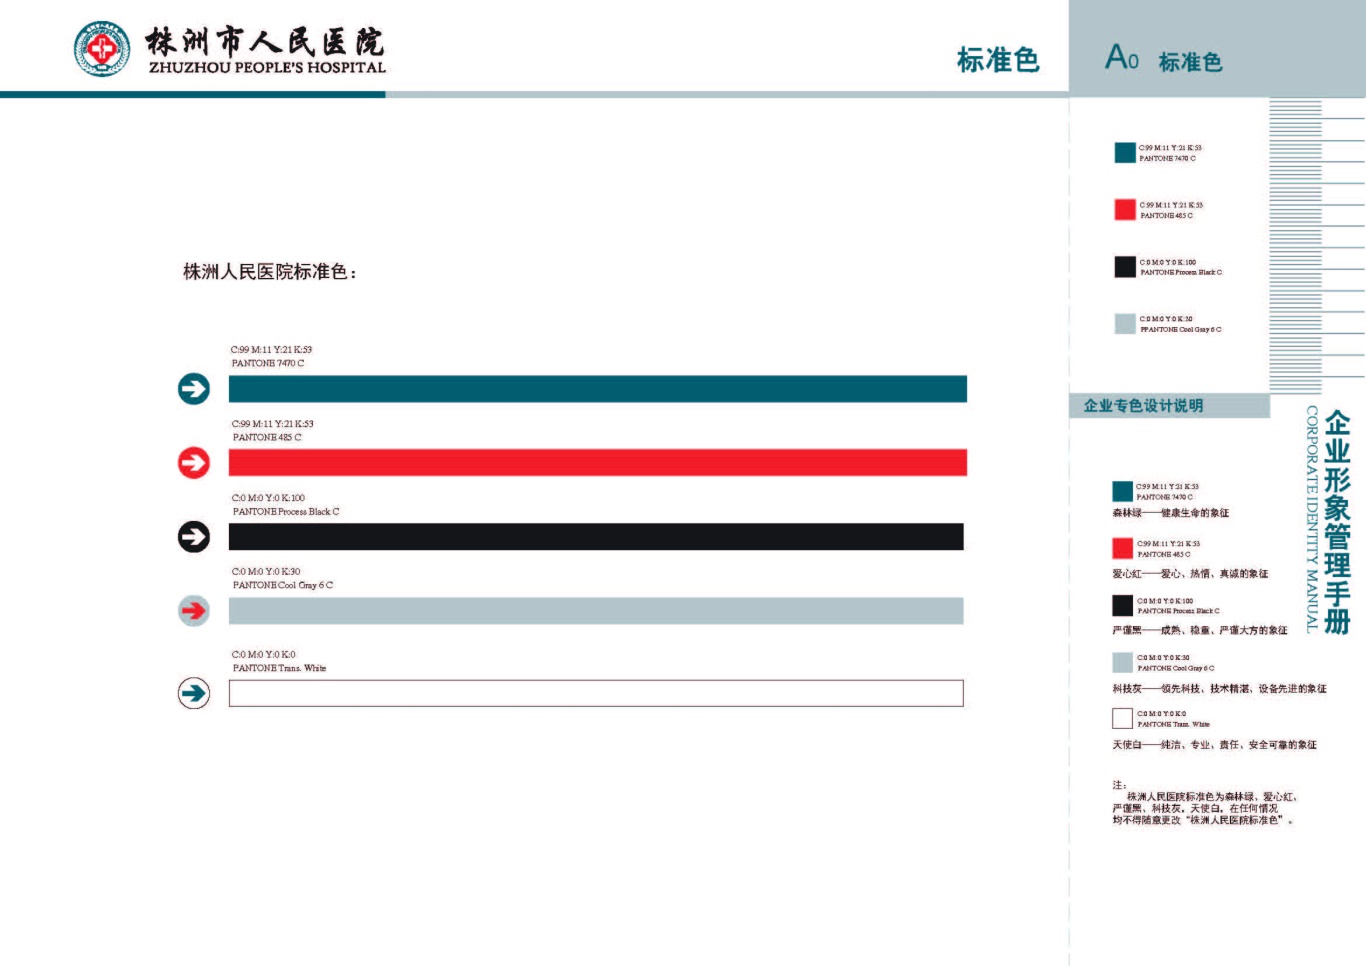 株洲市人民医院vis手册设计项目图3